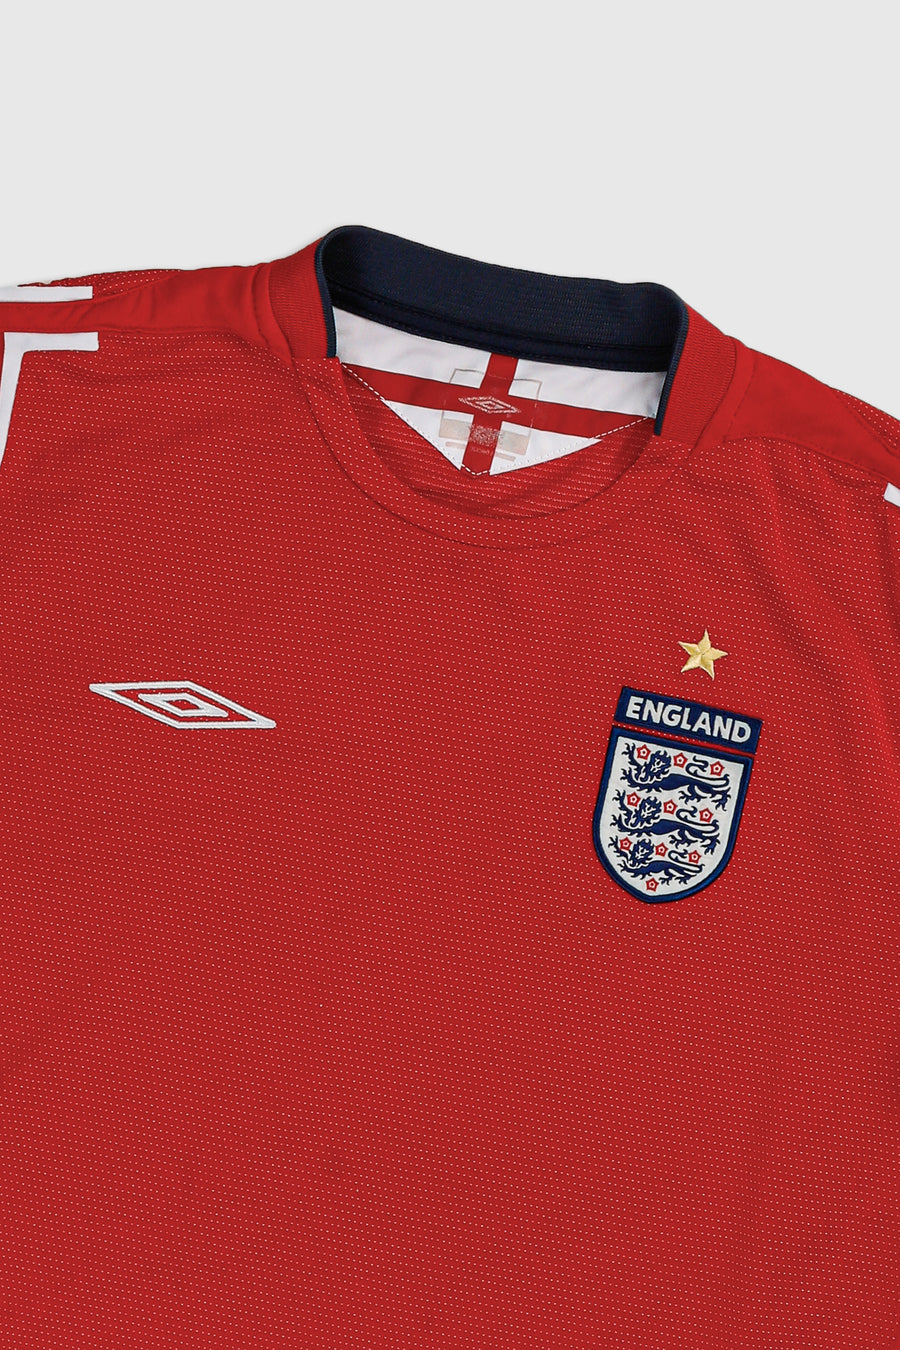 Vintage England Soccer Jersey - L